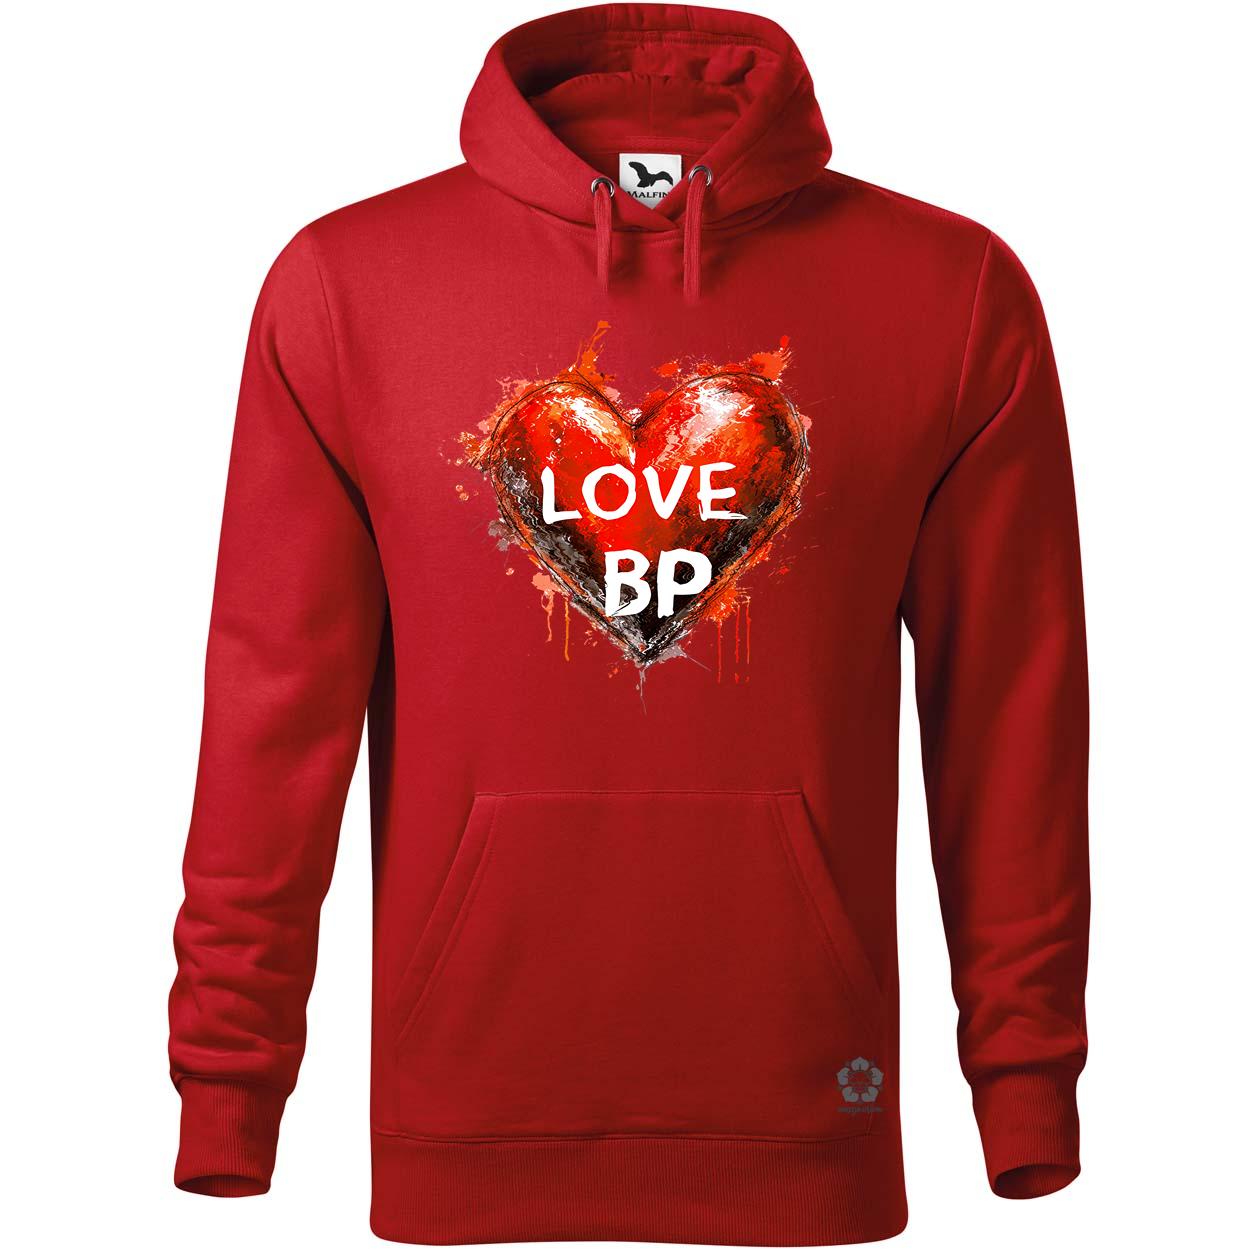 Love BP v9